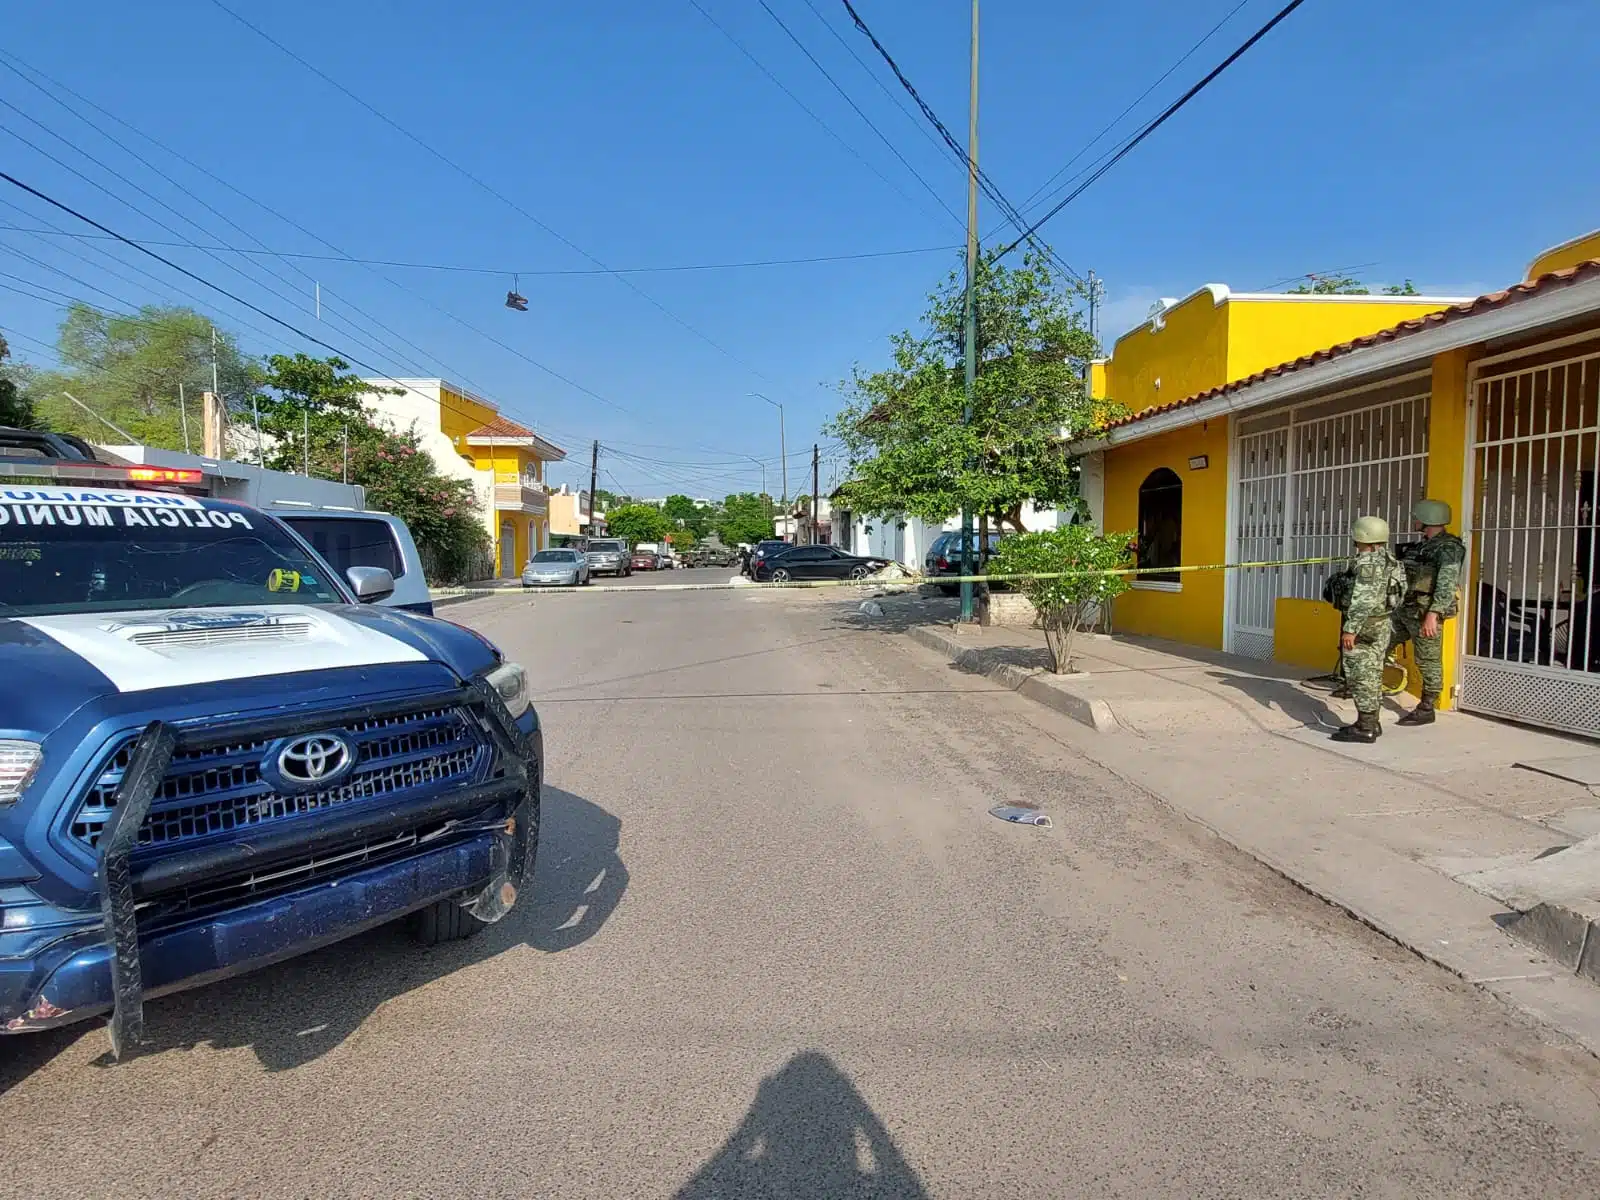 Parte delantera de una camioneta de policía, una calle pavimentada, carros estacionados, unos tenis colgados en unos cables, 2 personas paradas a un lado de una casa, árboles, cinta amarilla delimitando el área y casas